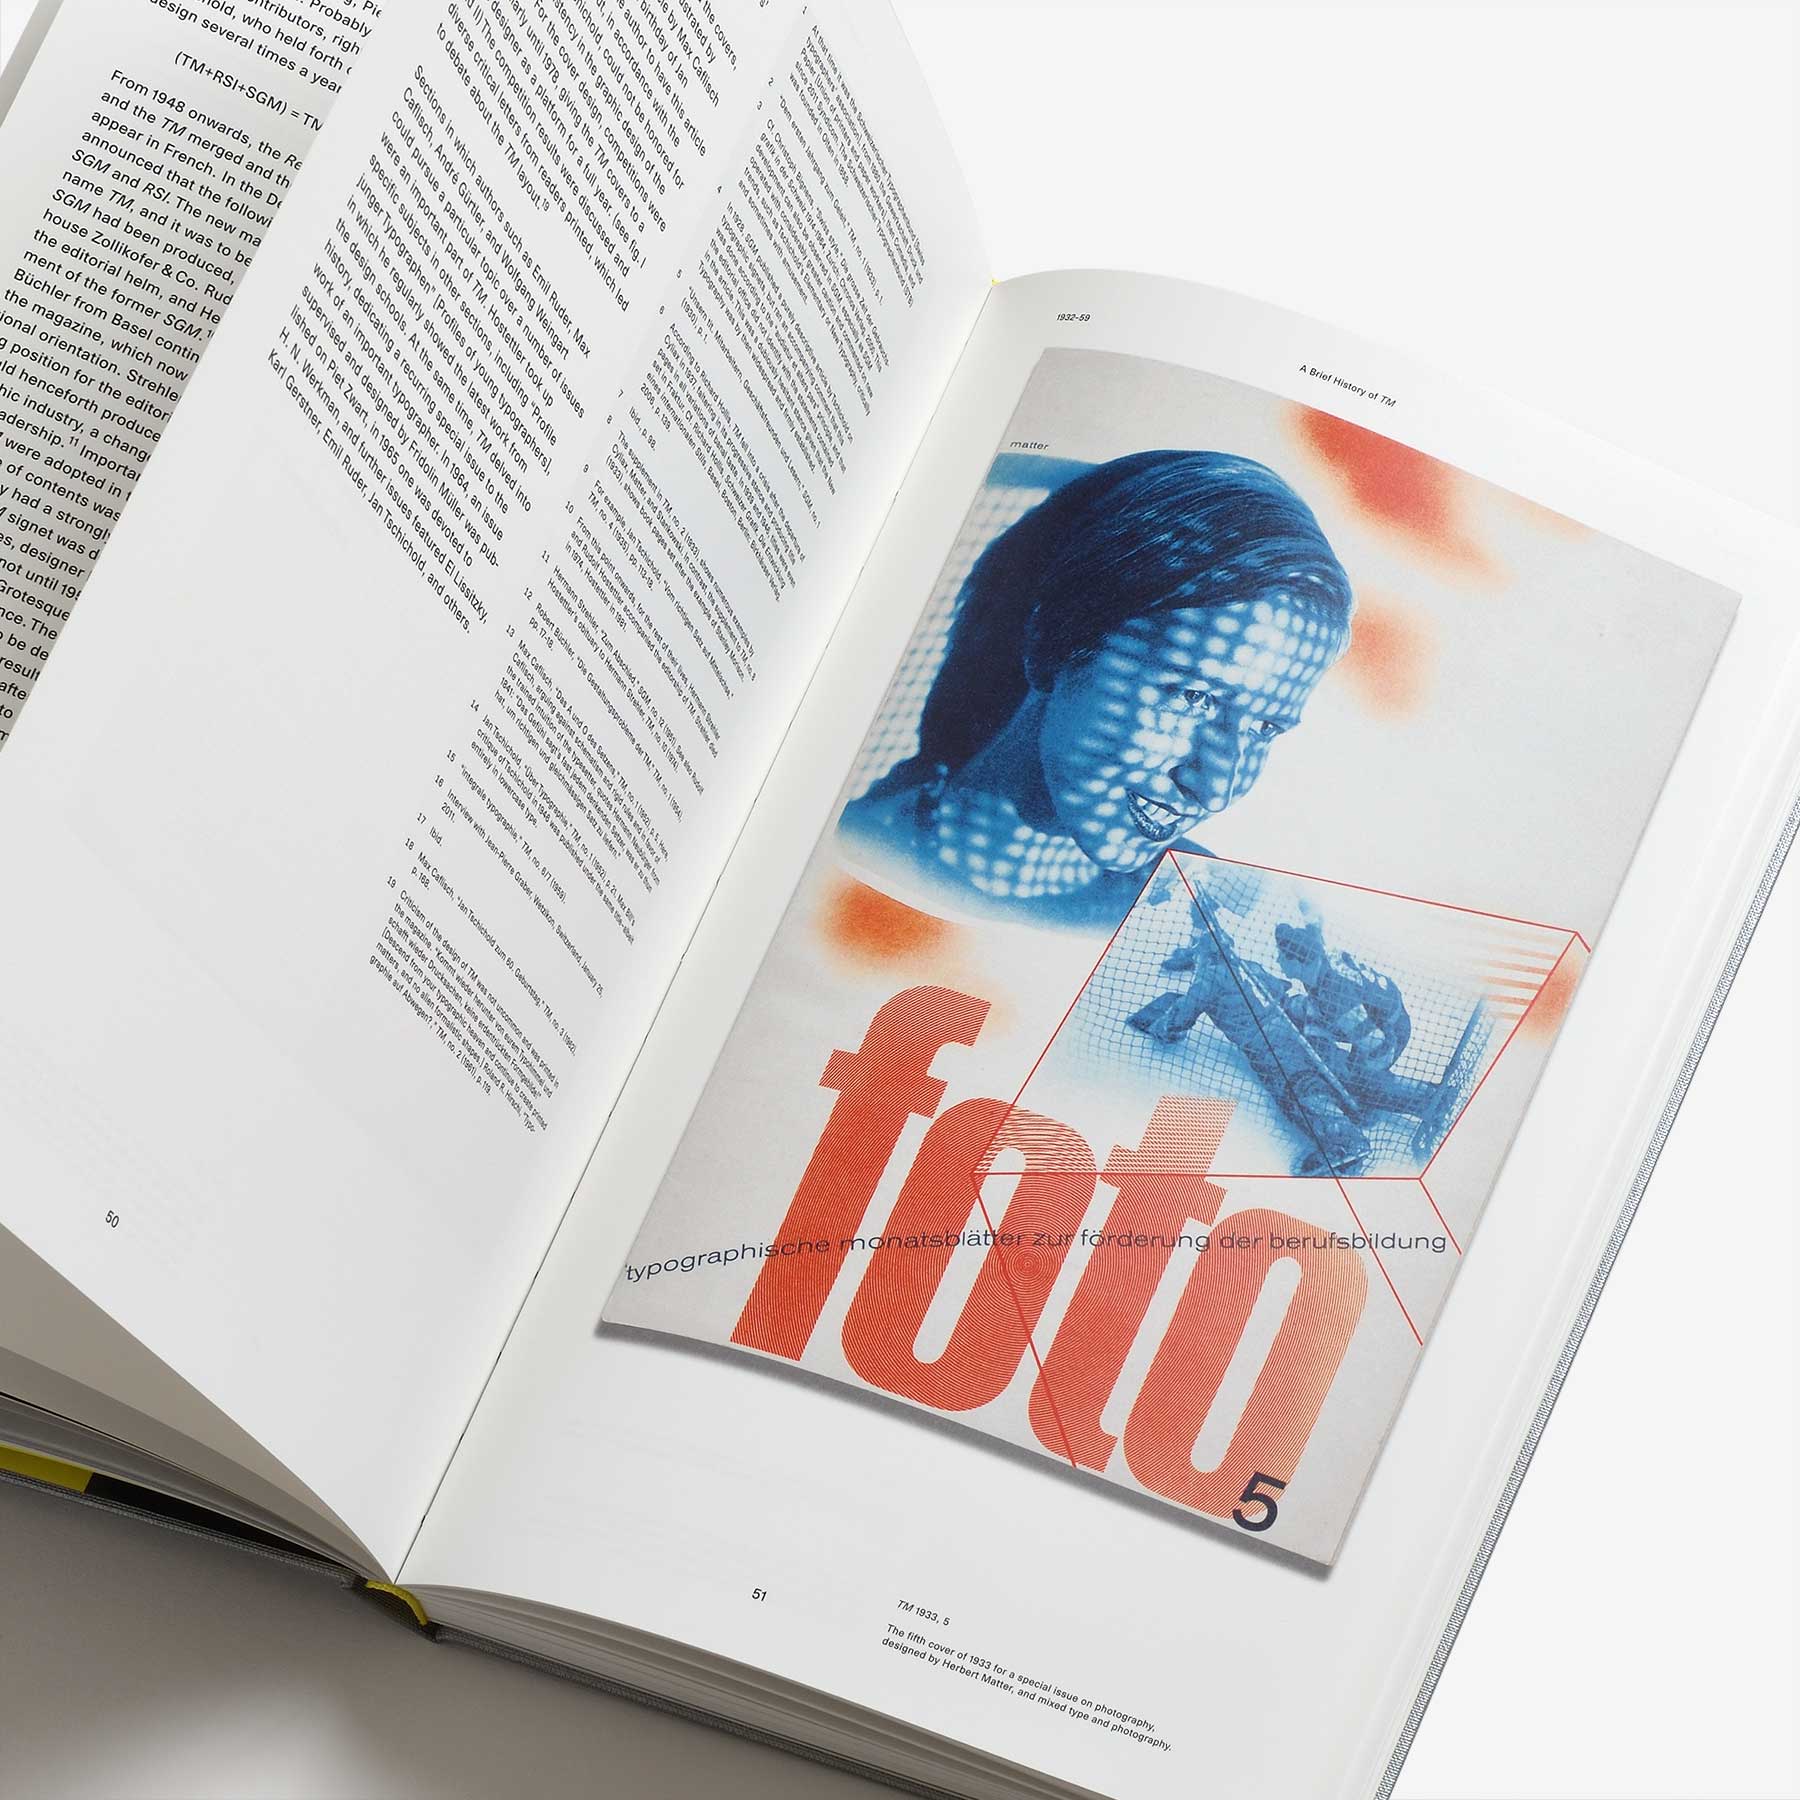 30 Years of Swiss Typographic Discourse in the Typografische Monatsblä